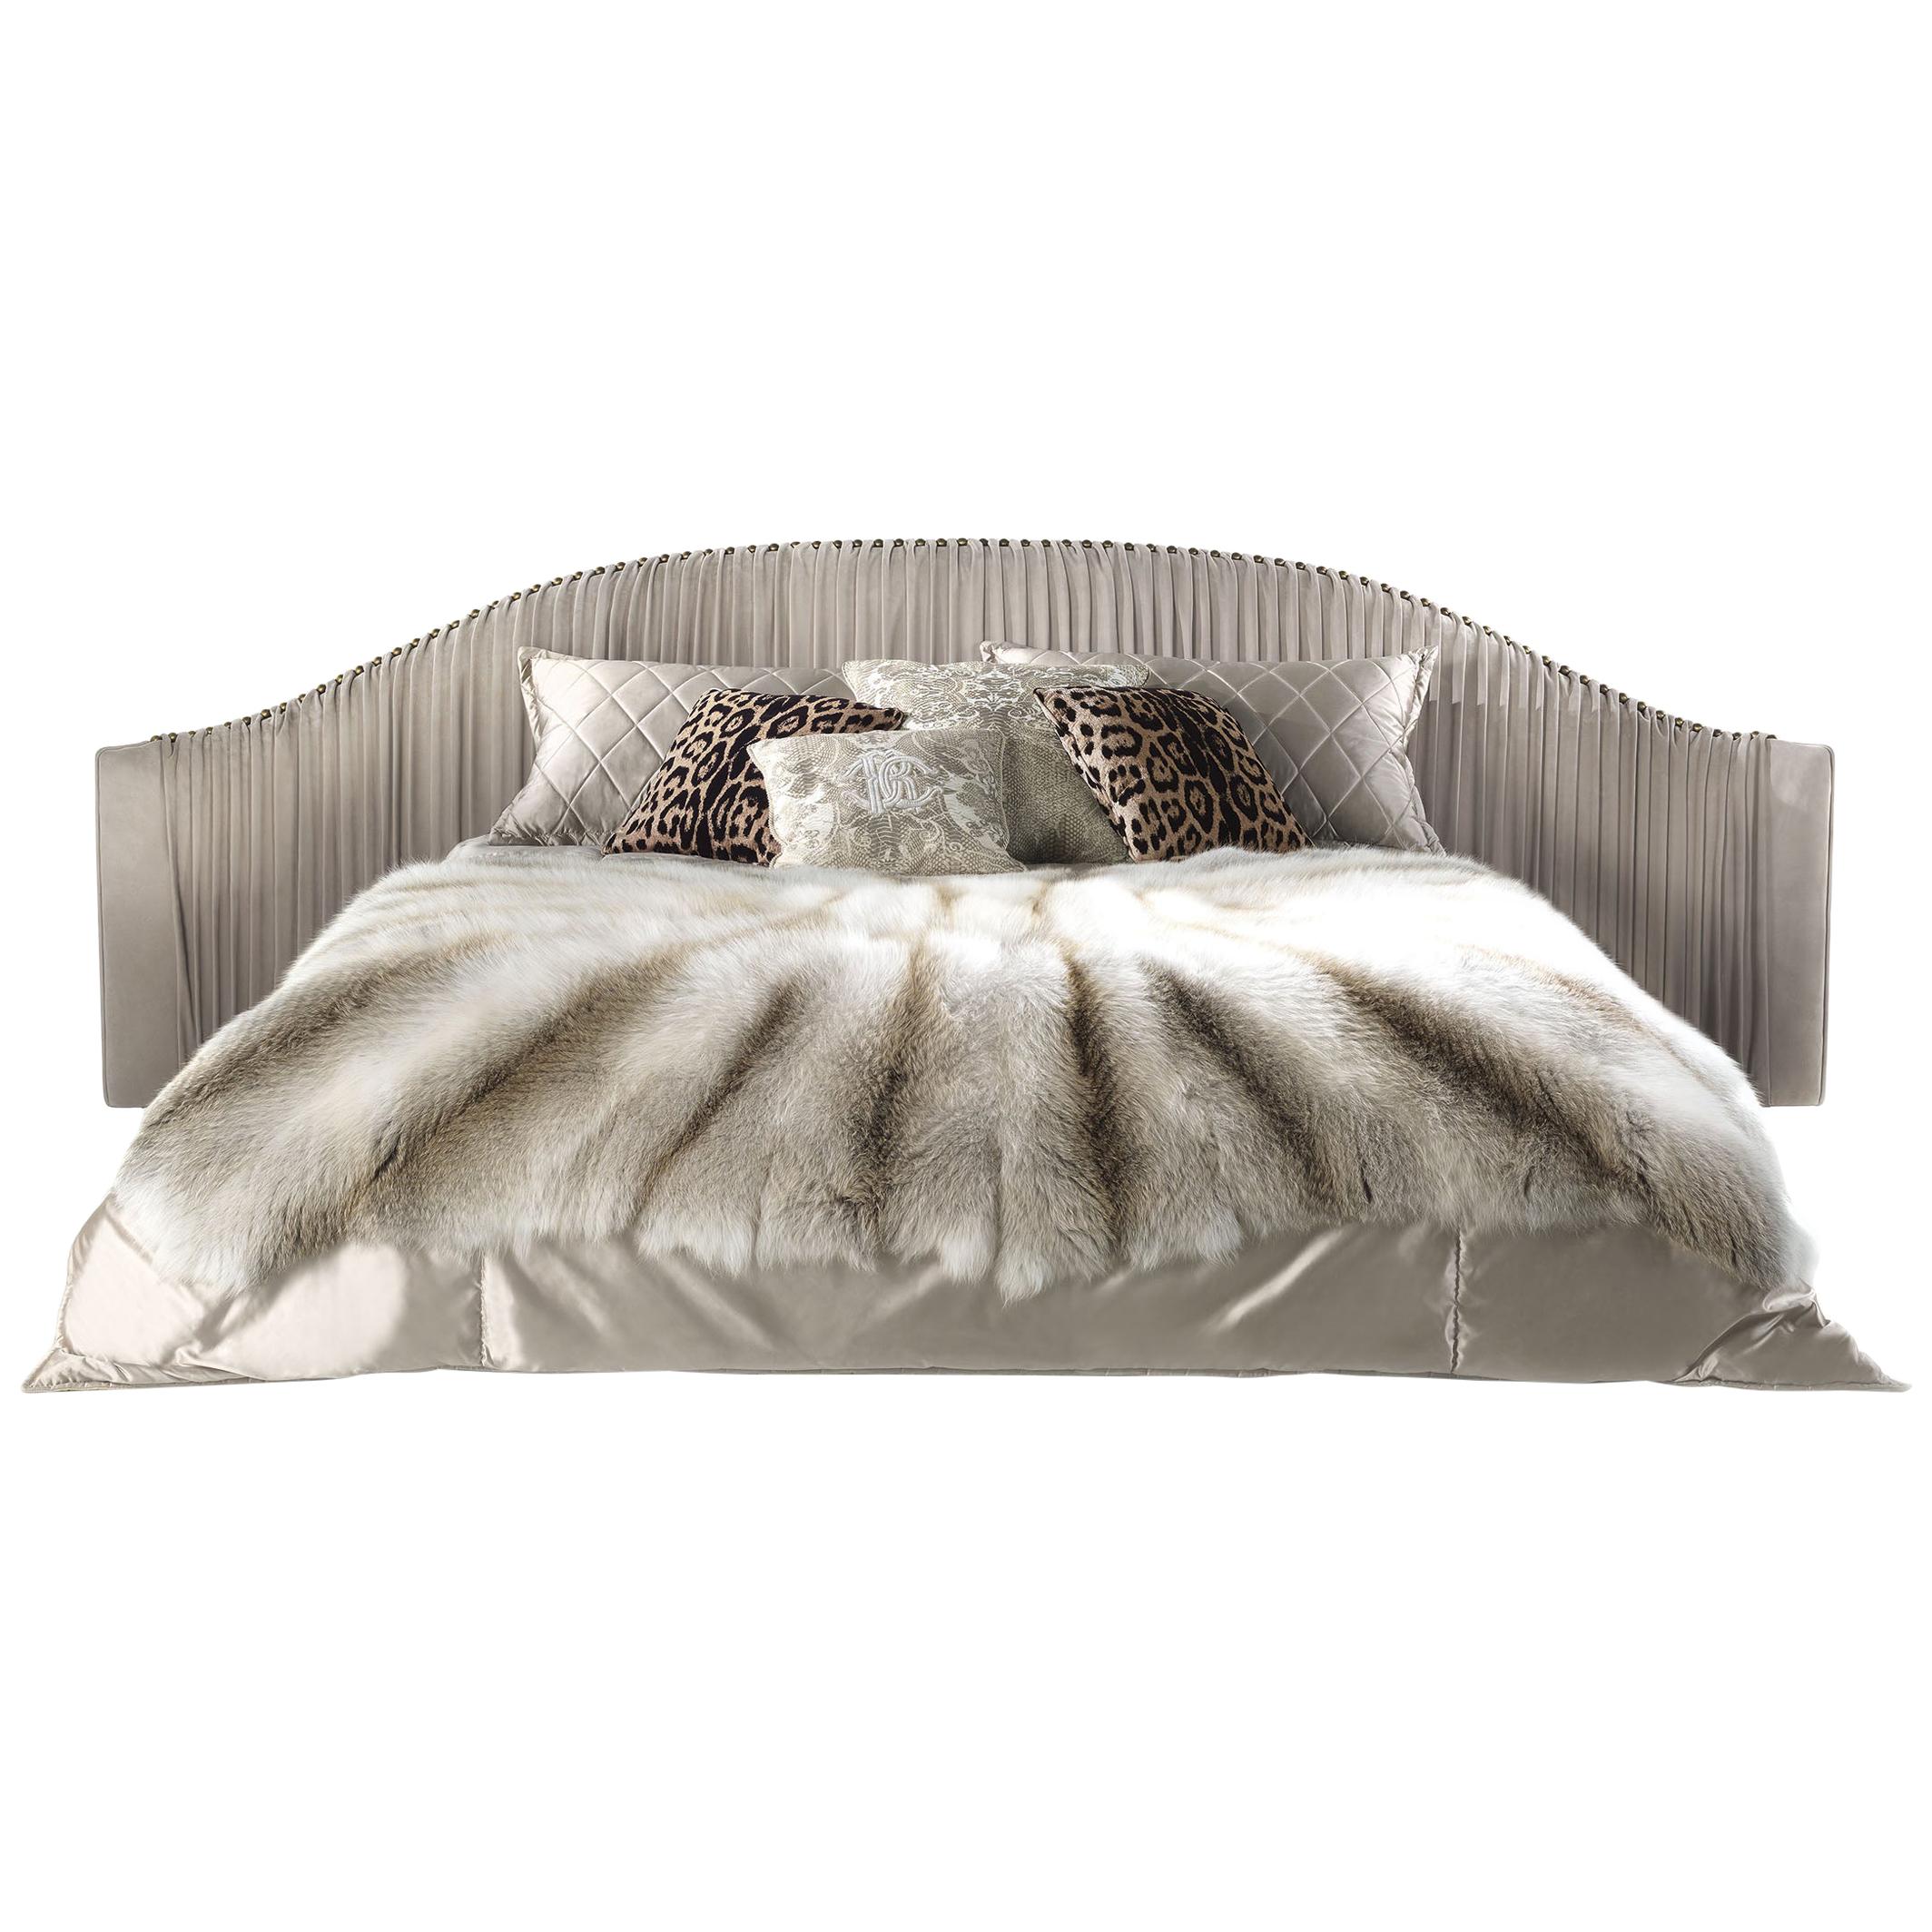 Sharpei-Bett aus Leder des 21. Jahrhunderts von Roberto Cavalli Home Interiors